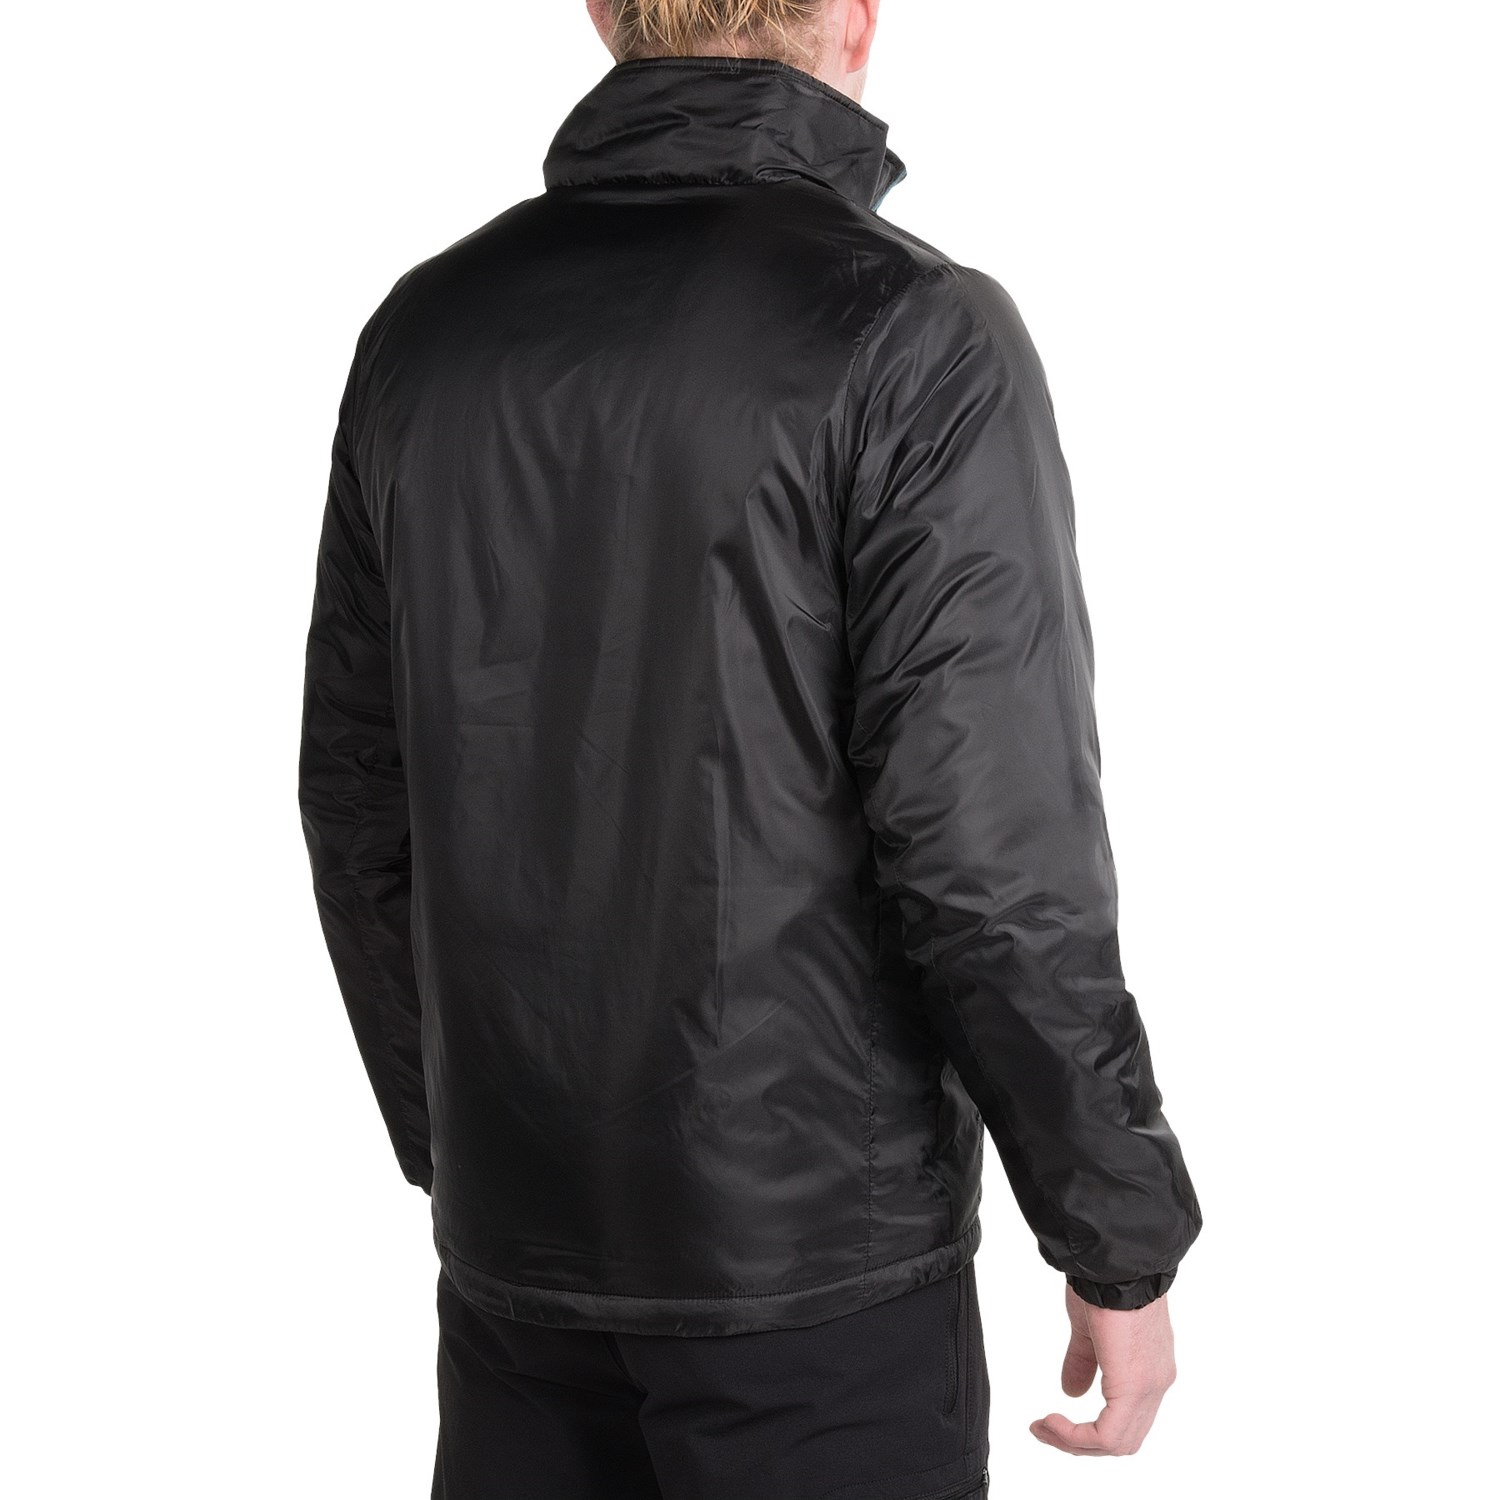 Cloudveil Pro Series Midweight Emissive Jacket (For Men) - Save 73%